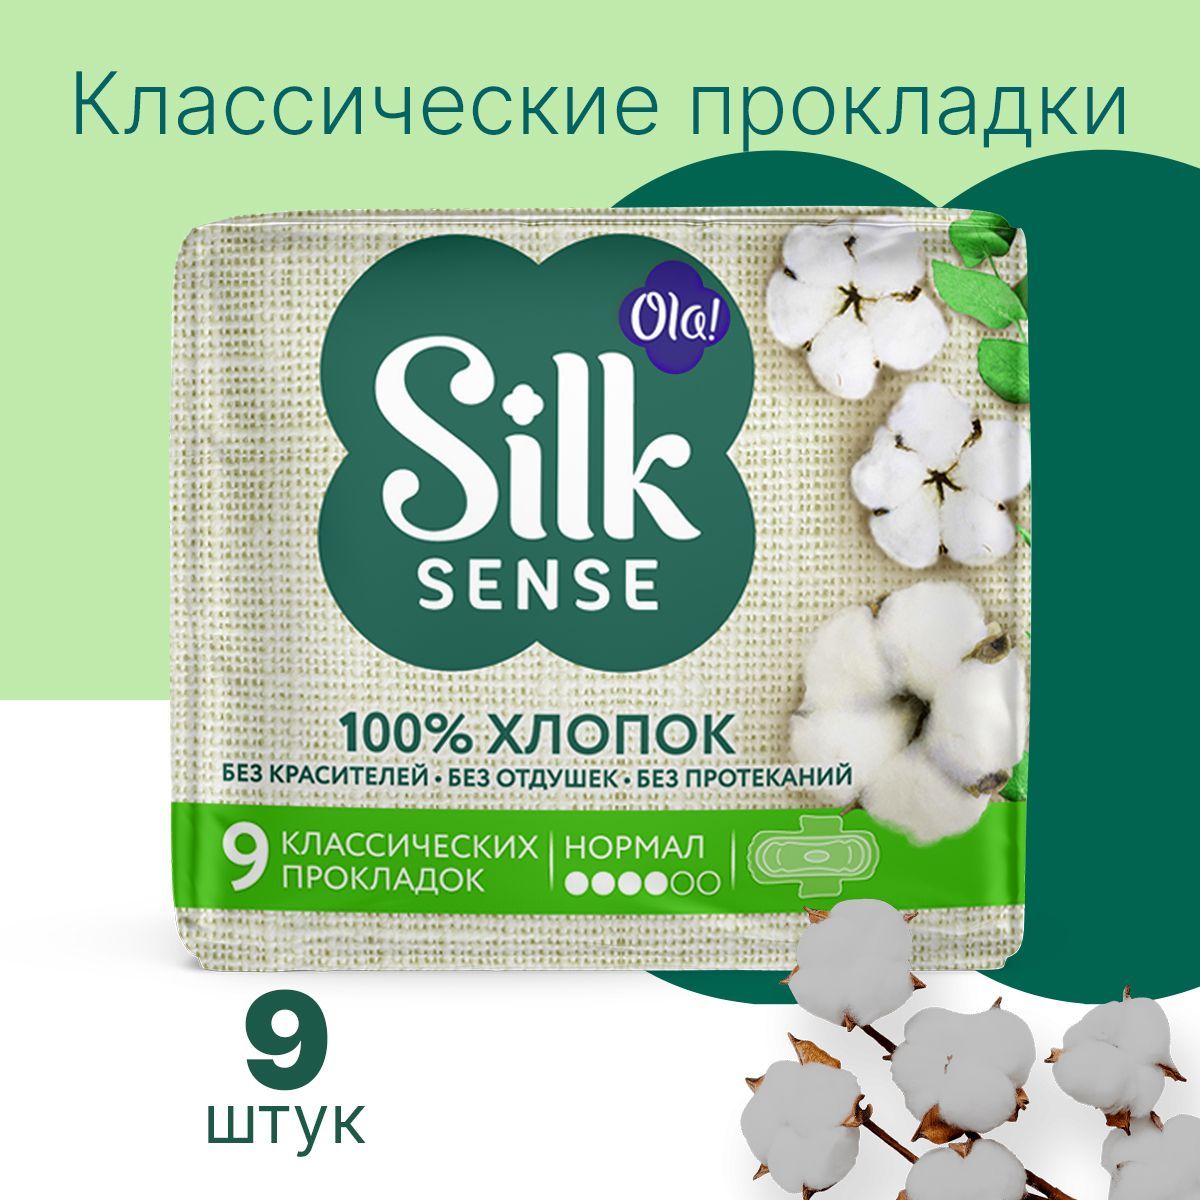 Натуральные прокладки Ola! Silk Sense Нормал с хлопковой поверхностью 18 шт 2 уп по 9 шт - фото 2